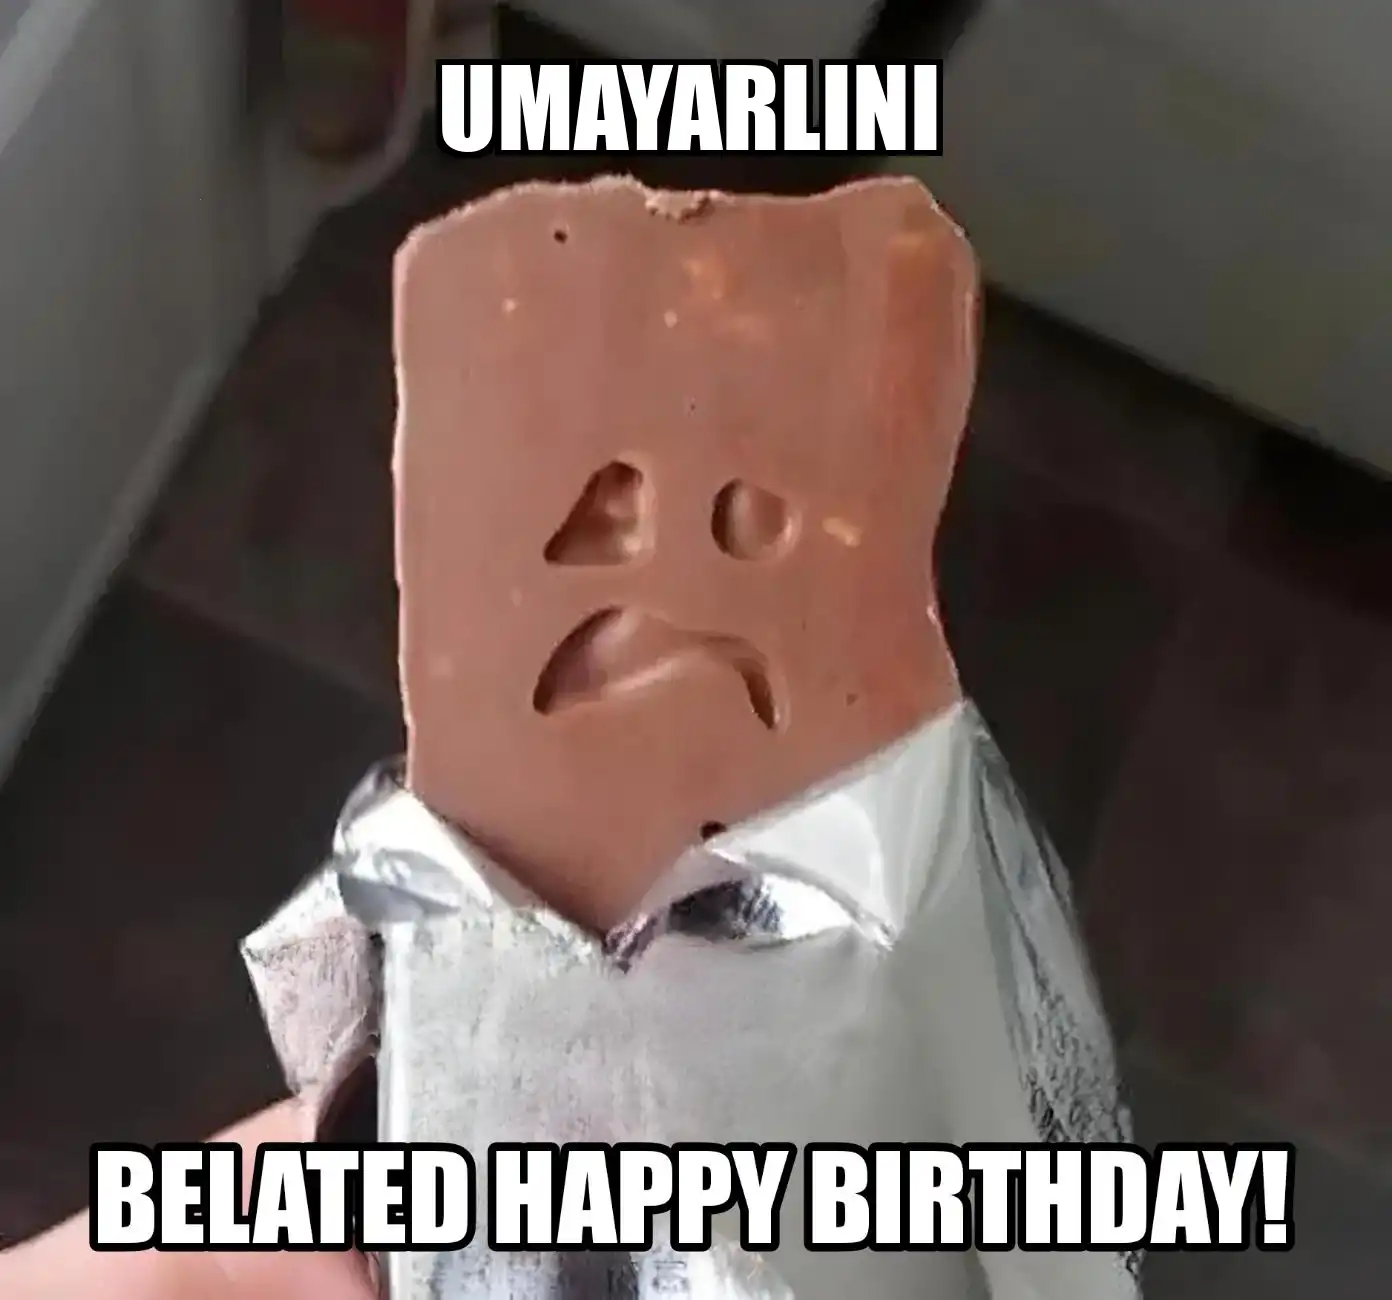 Happy Birthday Umayarlini Belated Happy Birthday Meme